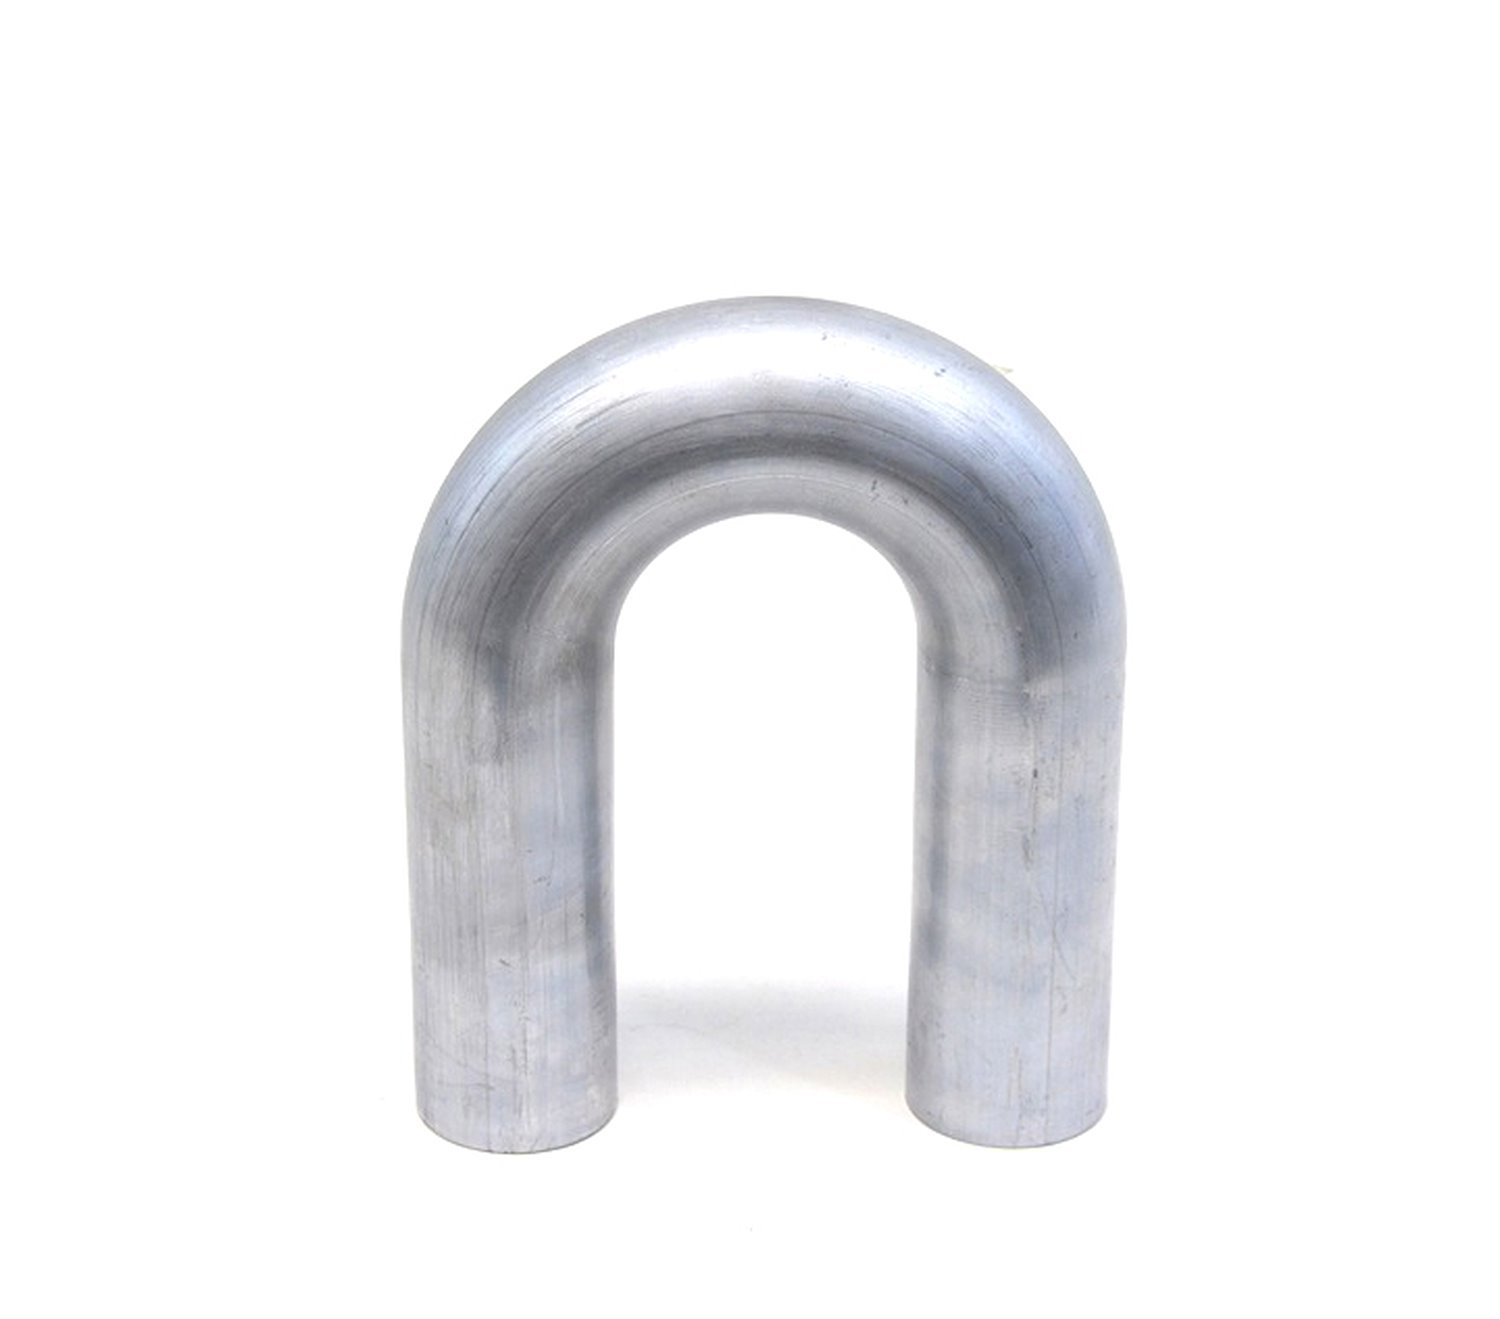 AT180-312-CLR-5 Aluminum Elbow Tube, 6061 Aluminum, 180-Degree U Bend Elbow Tubing, 3-1/8 in. OD, Tight Radius, 5 in. CLR